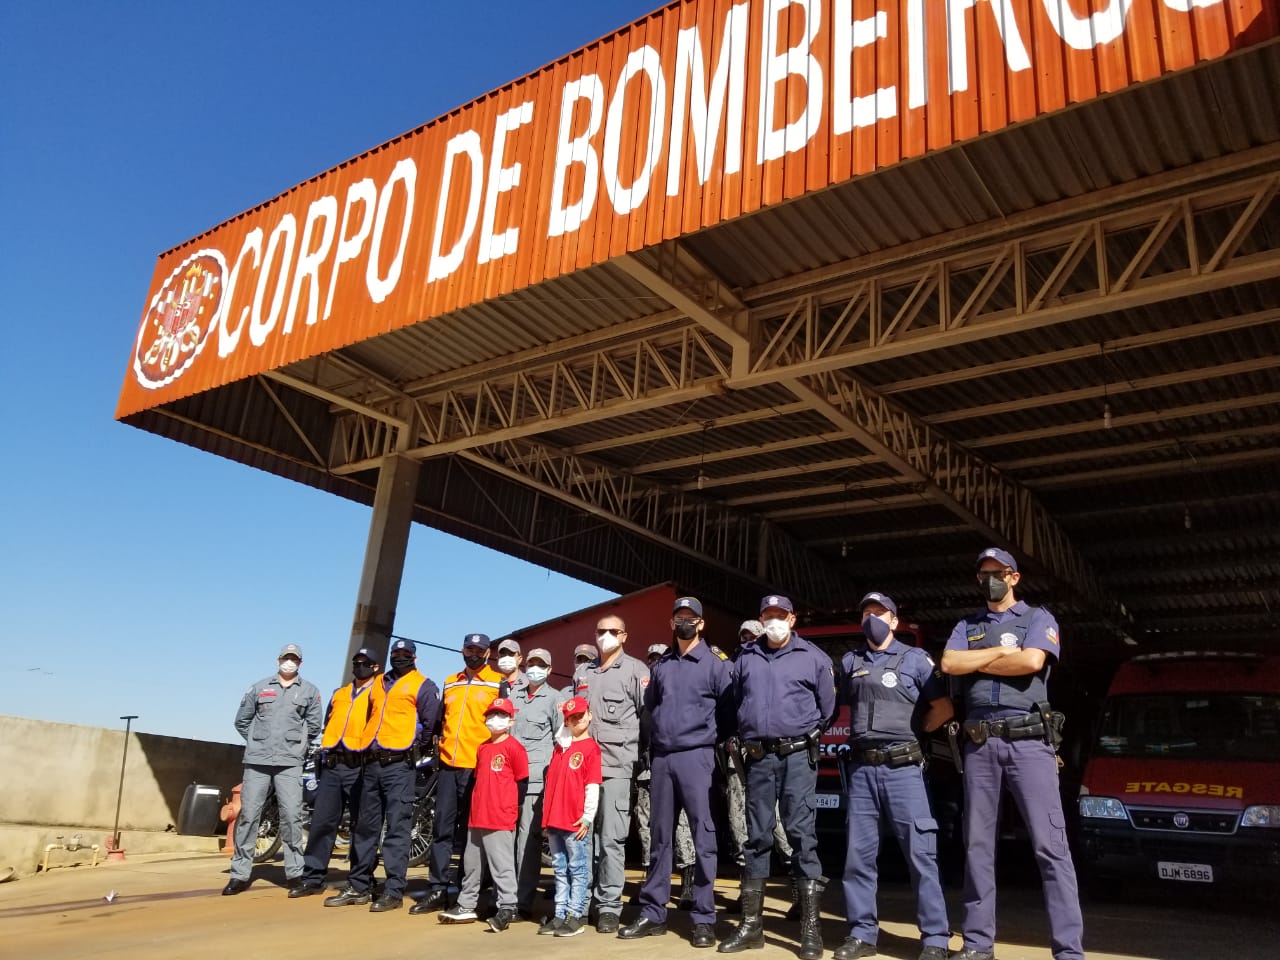 Dia do Bombeiro Brasileiro é comemorado com carreata em Itararé (SP)